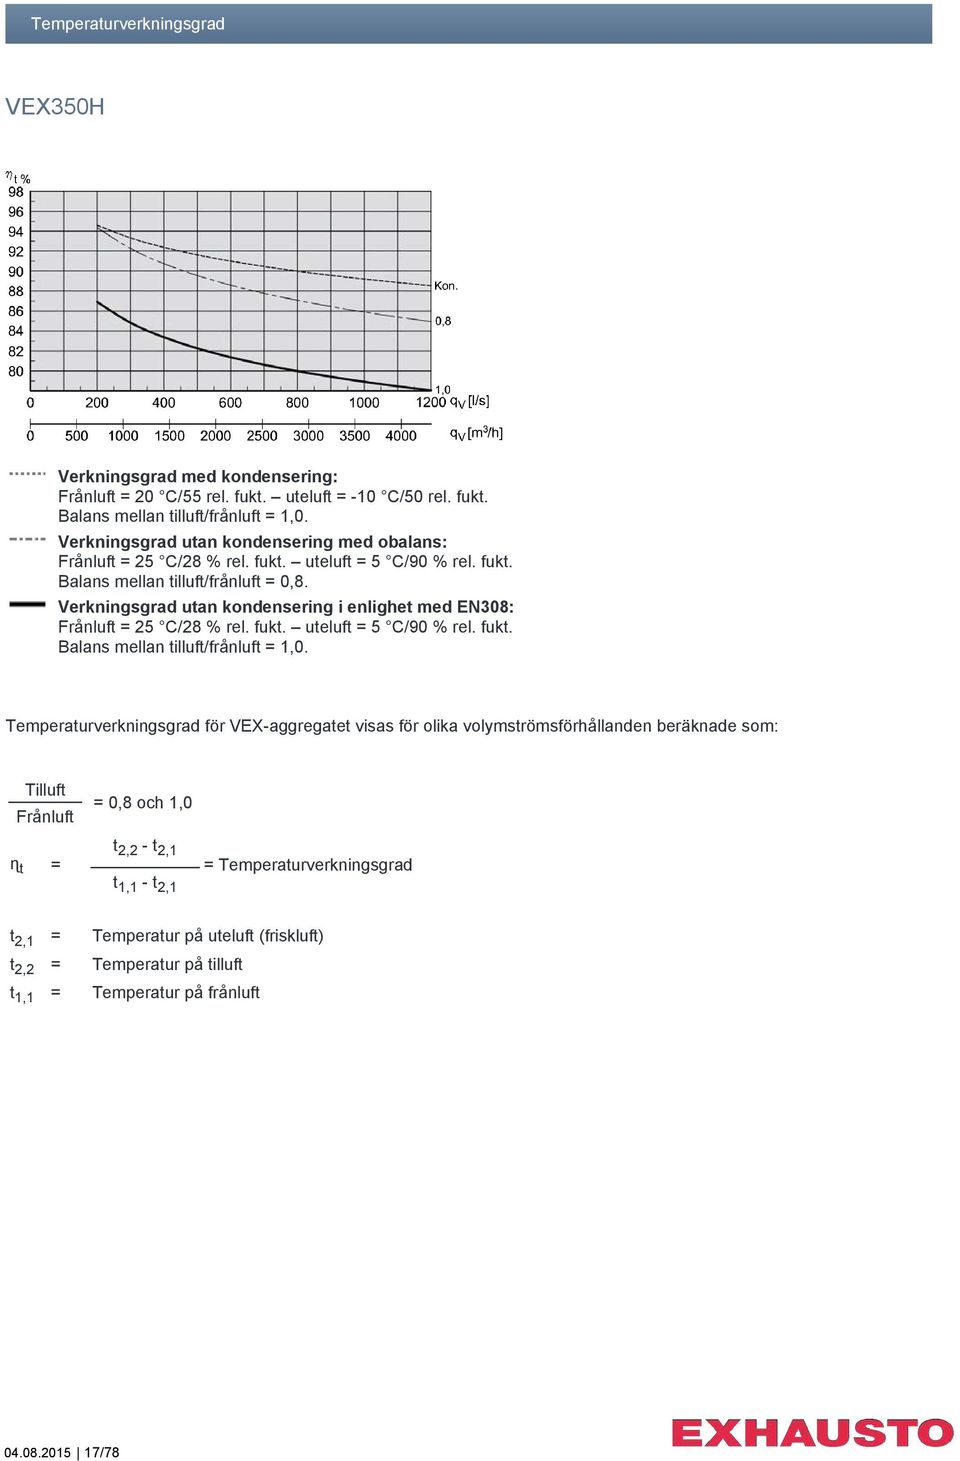 Verkningsgrad utan kondensering i enlighet med EN308: Frånluft = 25 C/28 % rel. fukt. uteluft = 5 C/90 % rel. fukt. Balans mellan tilluft/frånluft = 1,0.